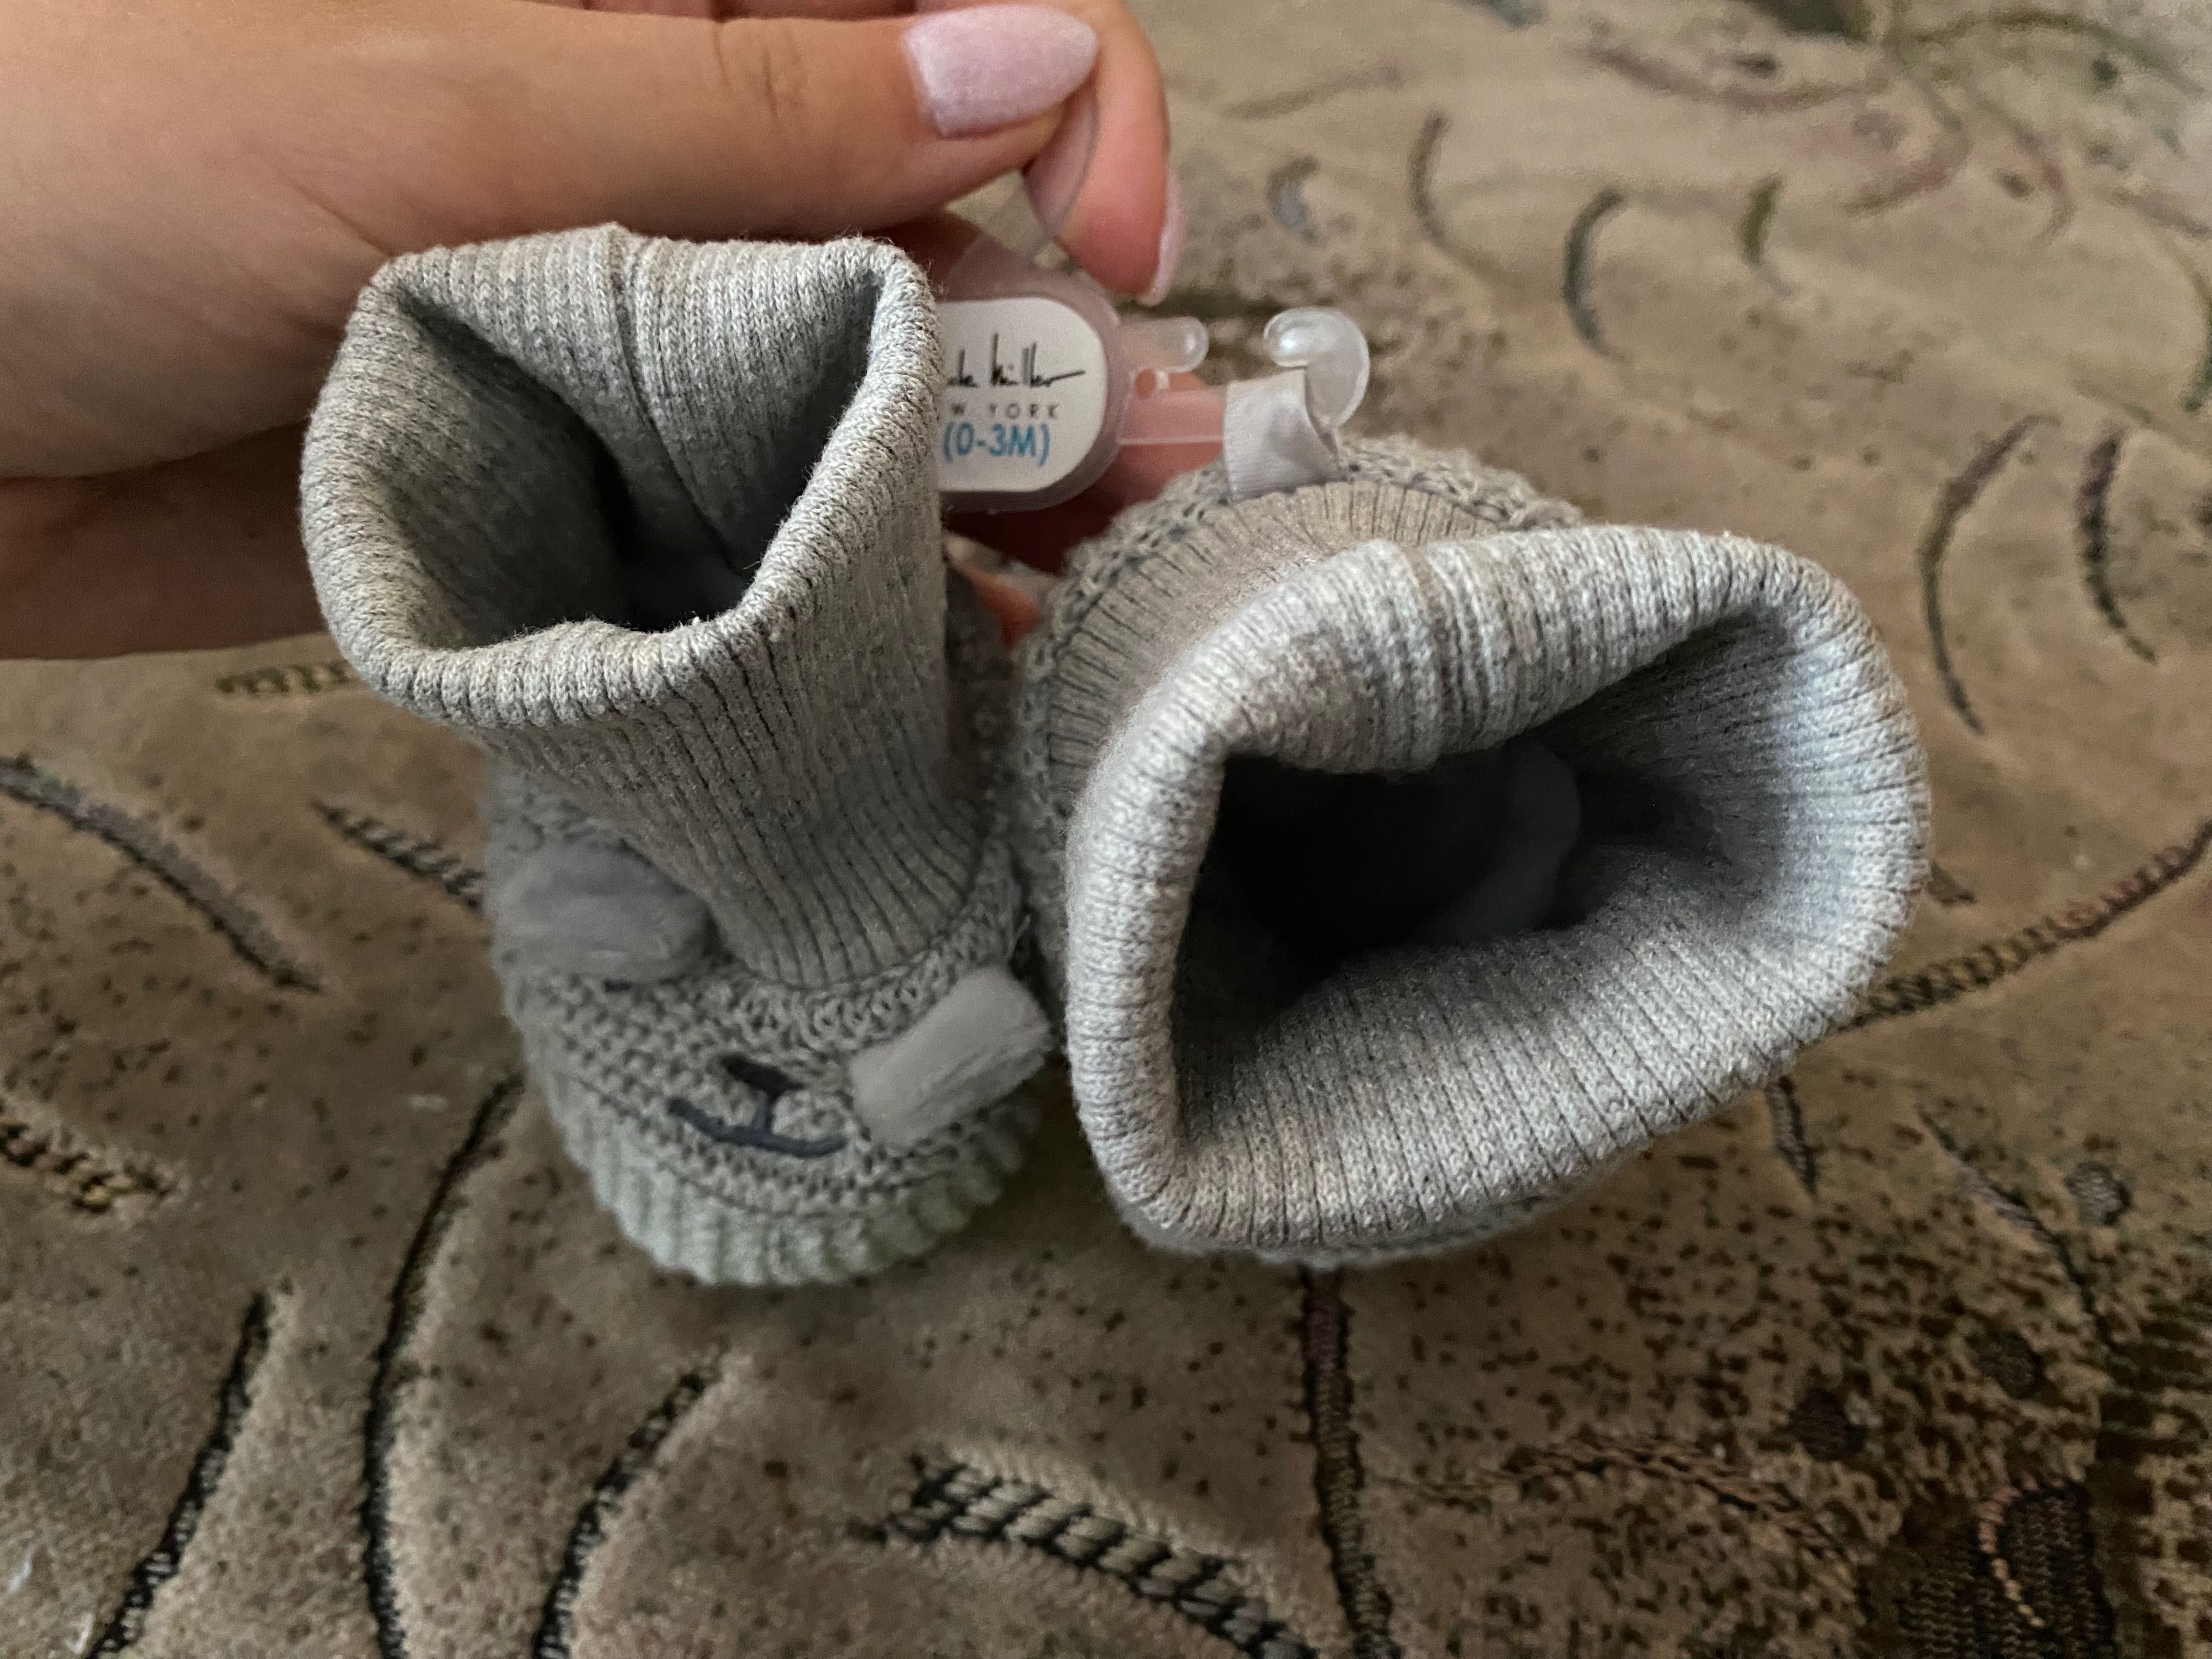 Дитячі детские пинетки носки нарядні нарядные Теплі пінетки теплые